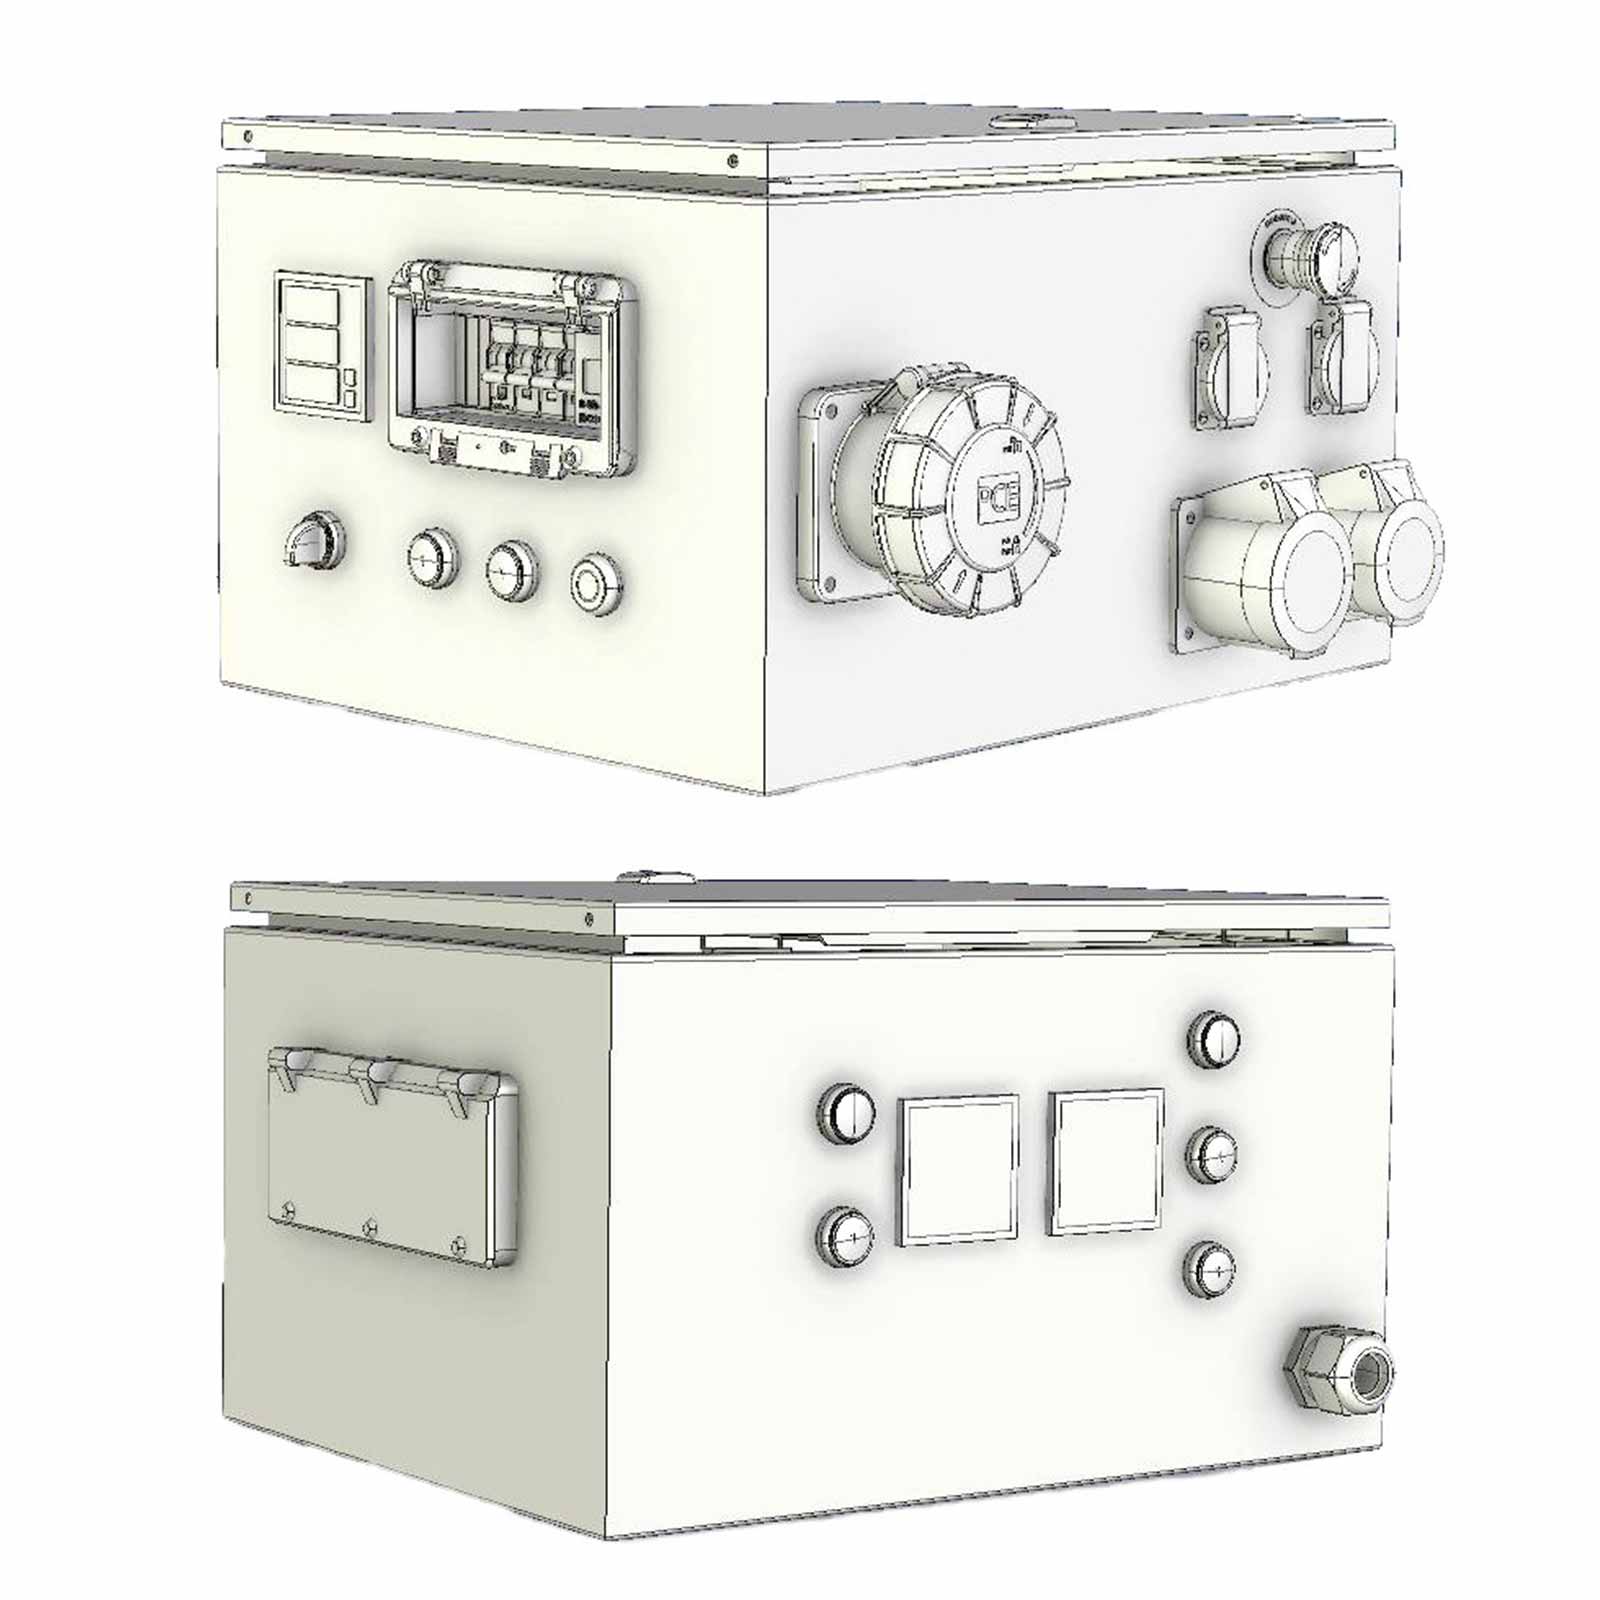 Generator Elmag cu priză de putere SEZN 30WD-AVR-IT/TN